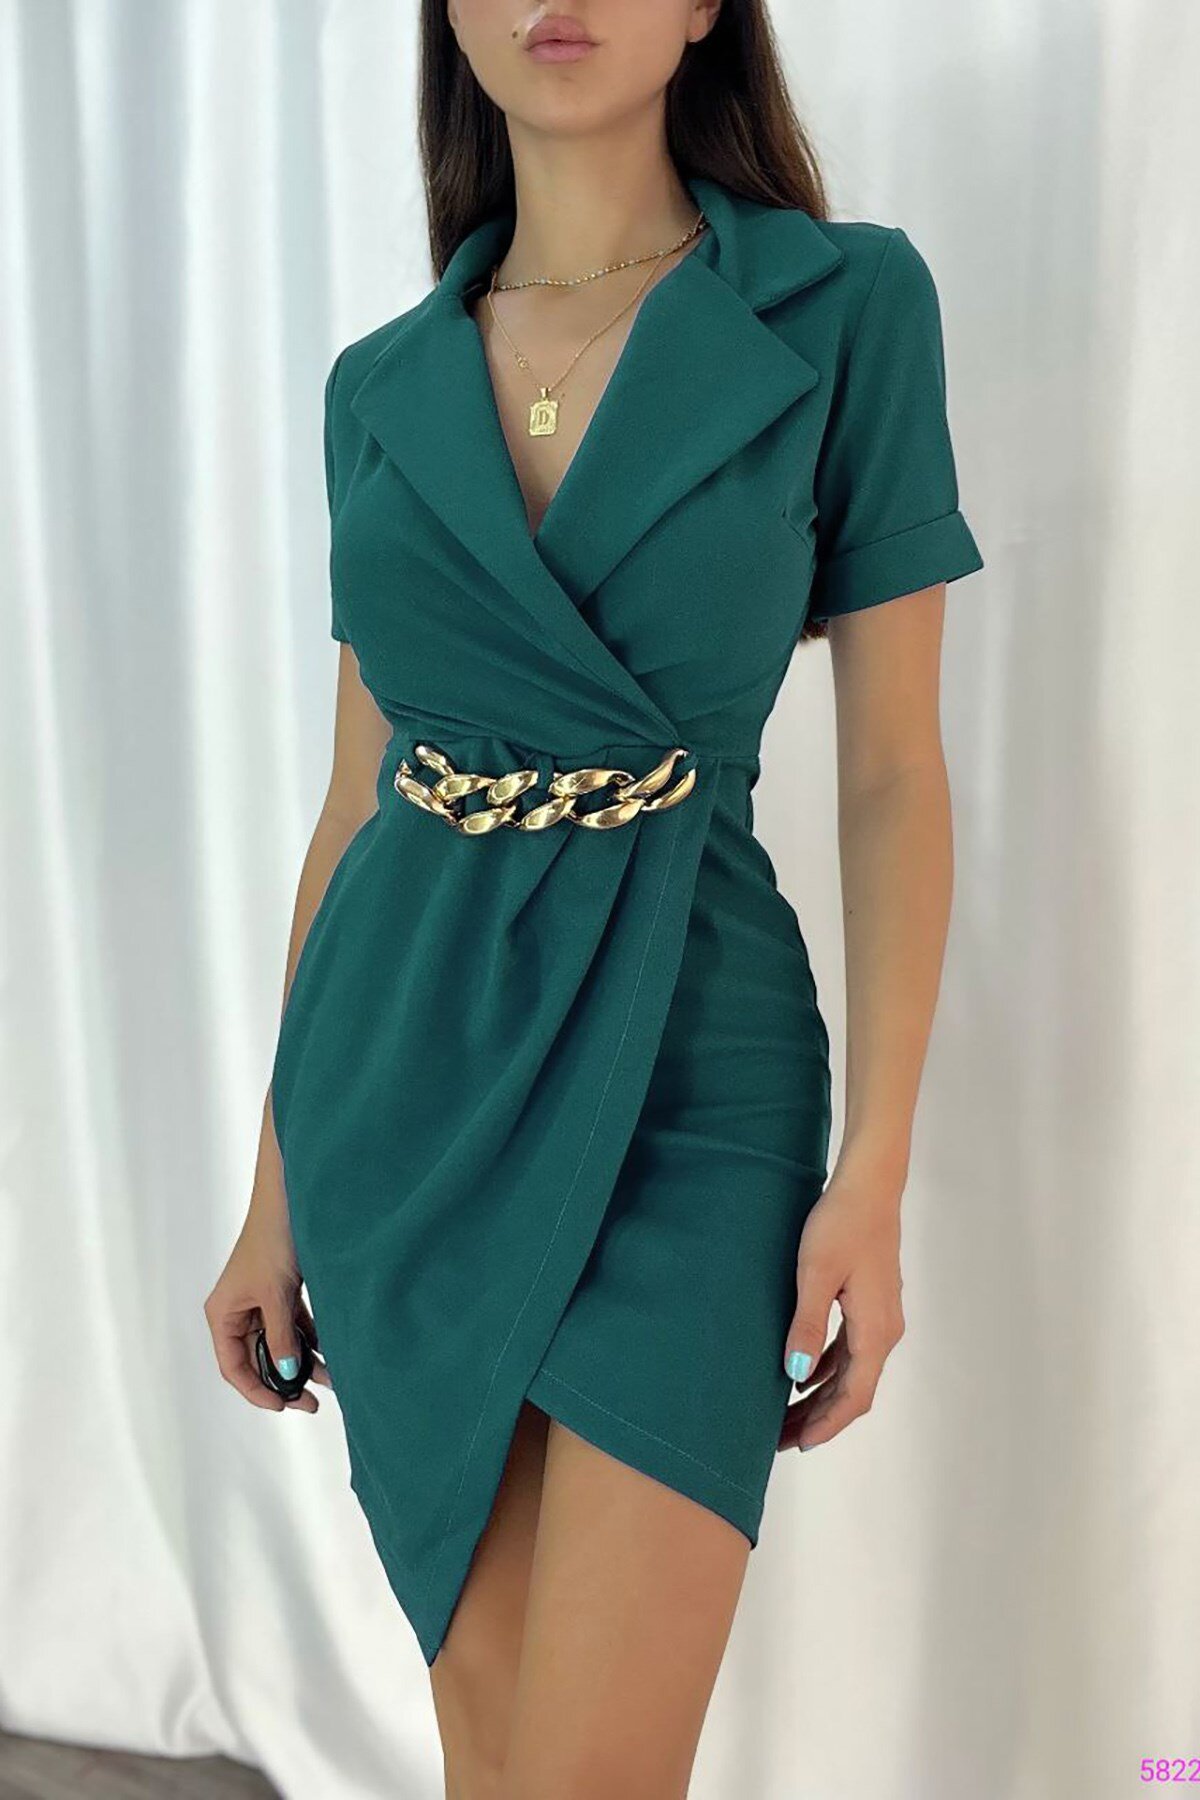 Deafox Yeşil İthal Krep Kumaş Zincir Ve Yaka Detaylı Mini Elbise